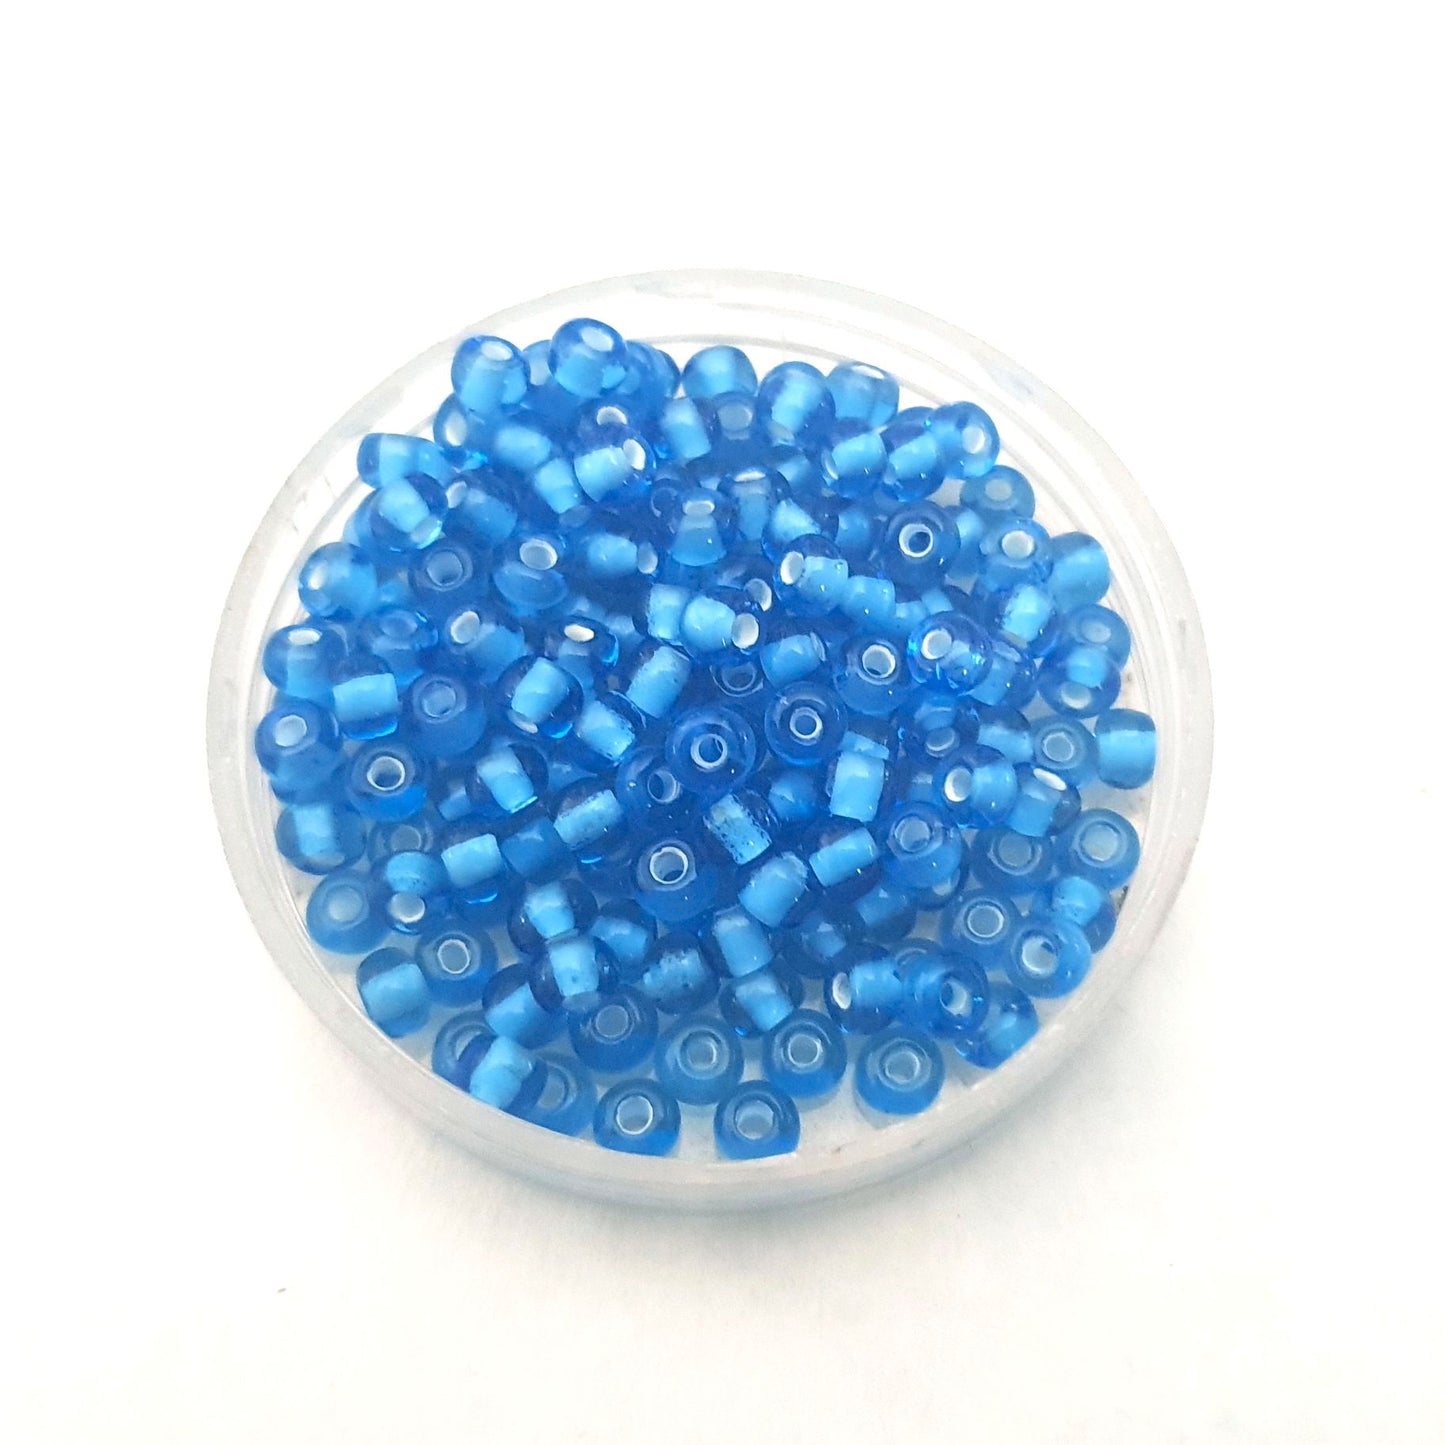 5 0 4.5mm Blue - White Heart Czech Seed Bead